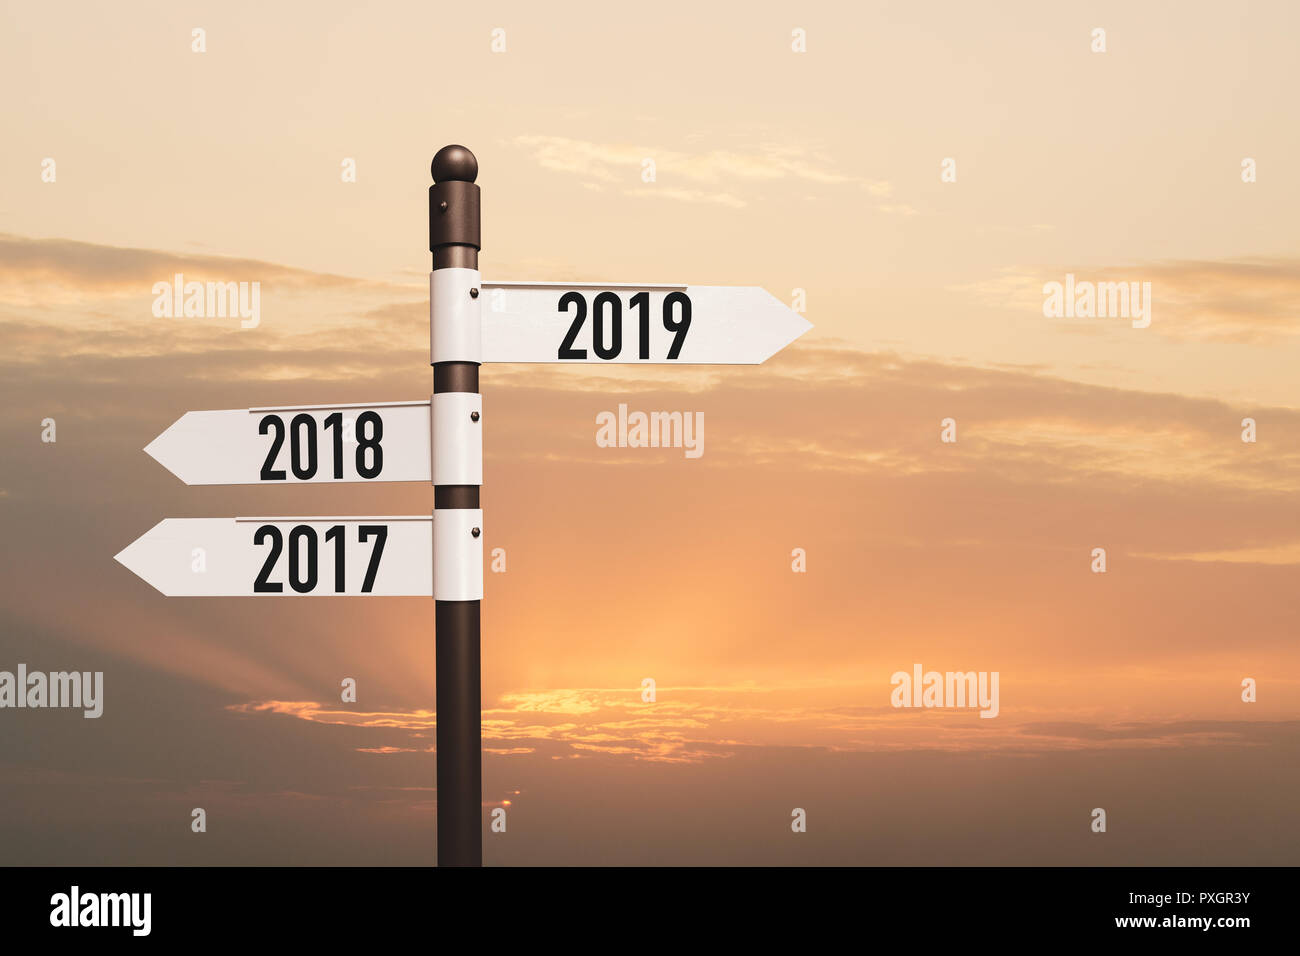 2019 felice anno nuovo- signpost, strada signon Cielo di tramonto e nuvole Foto Stock